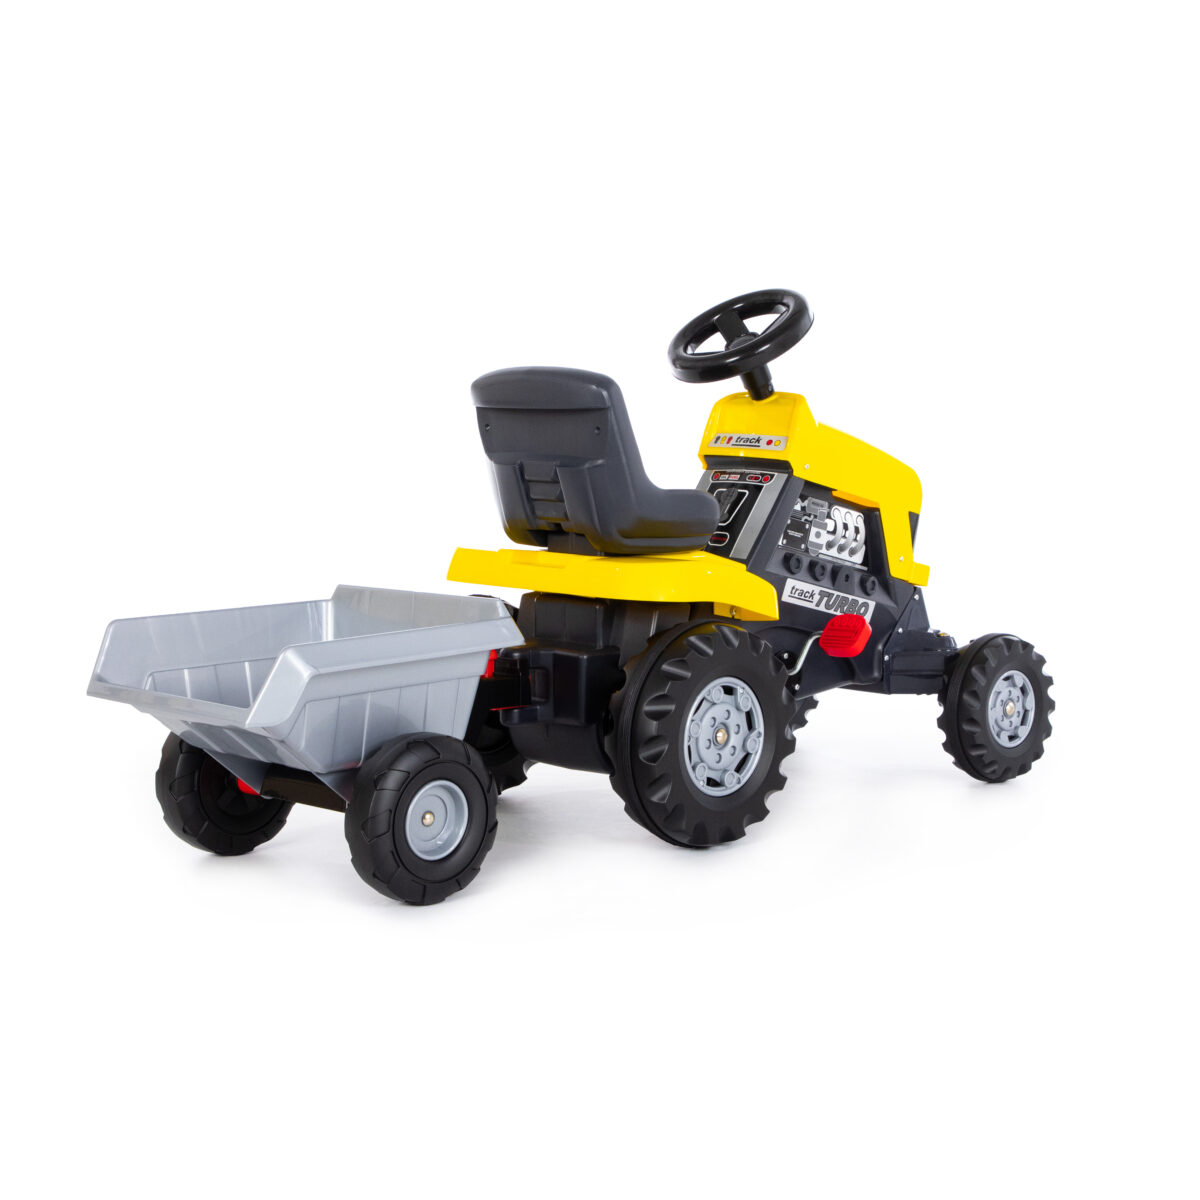 Каталка-трактор с педалями "Turbo" (жёлтая) с полуприцепом (Арт. 89328) 4